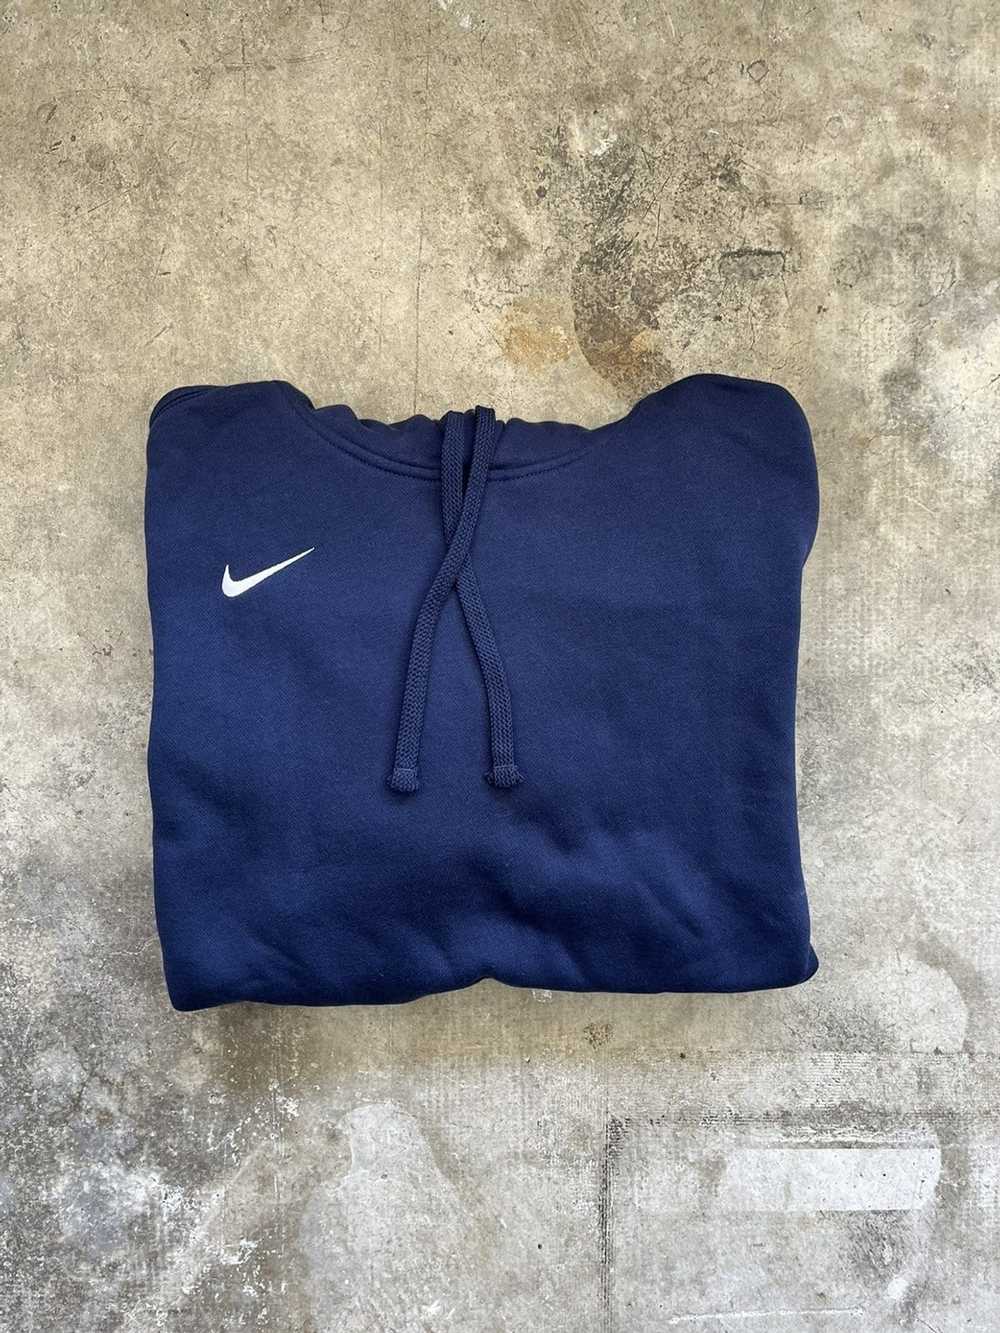 Nike × Vintage Vintage Nike Sweatshirt - image 1